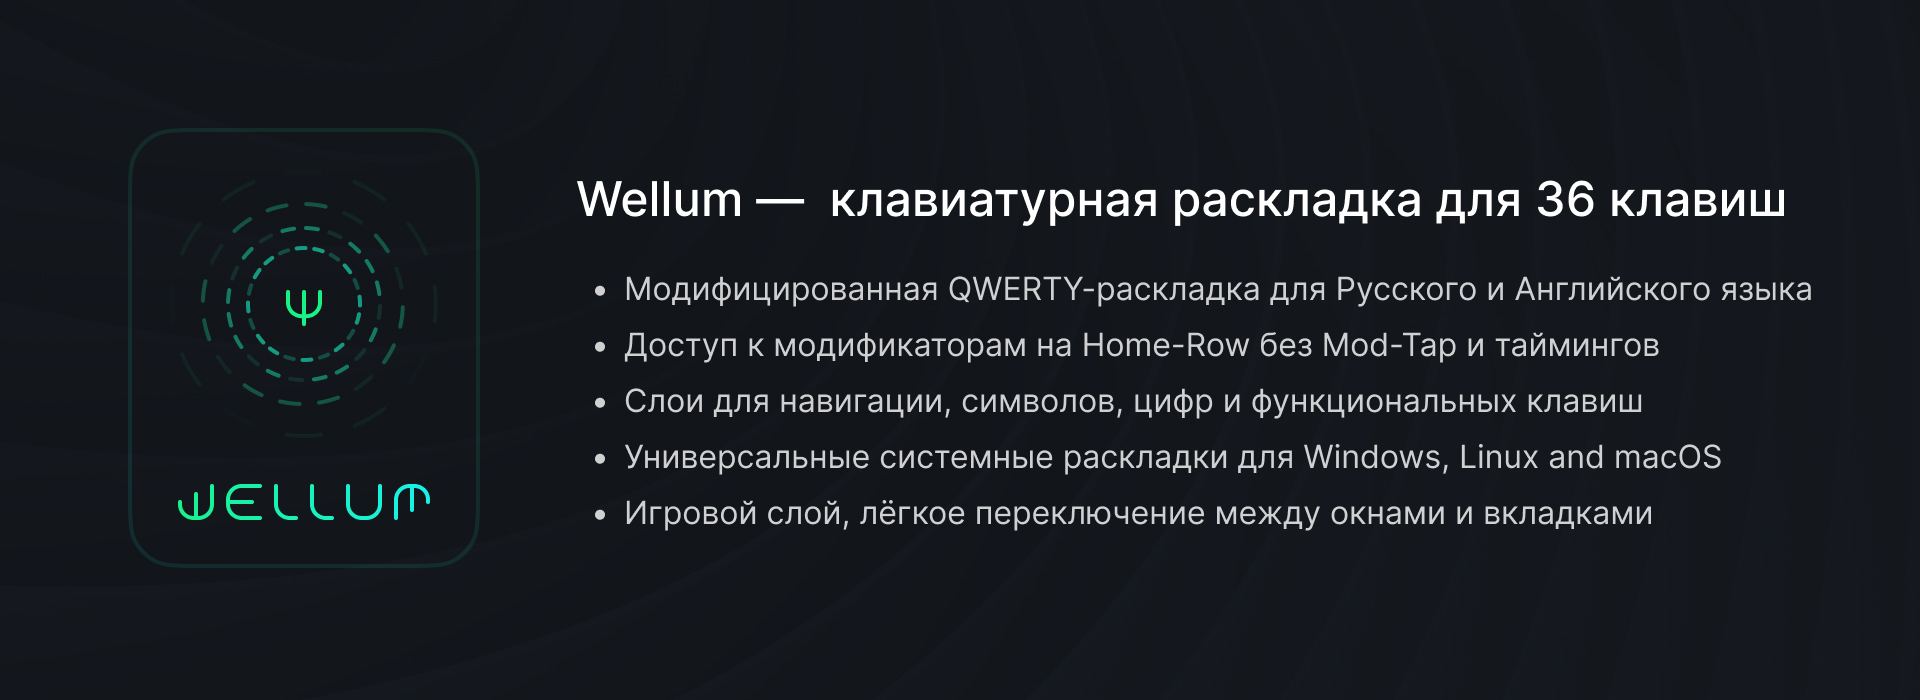 wellum-description-russian.jpg